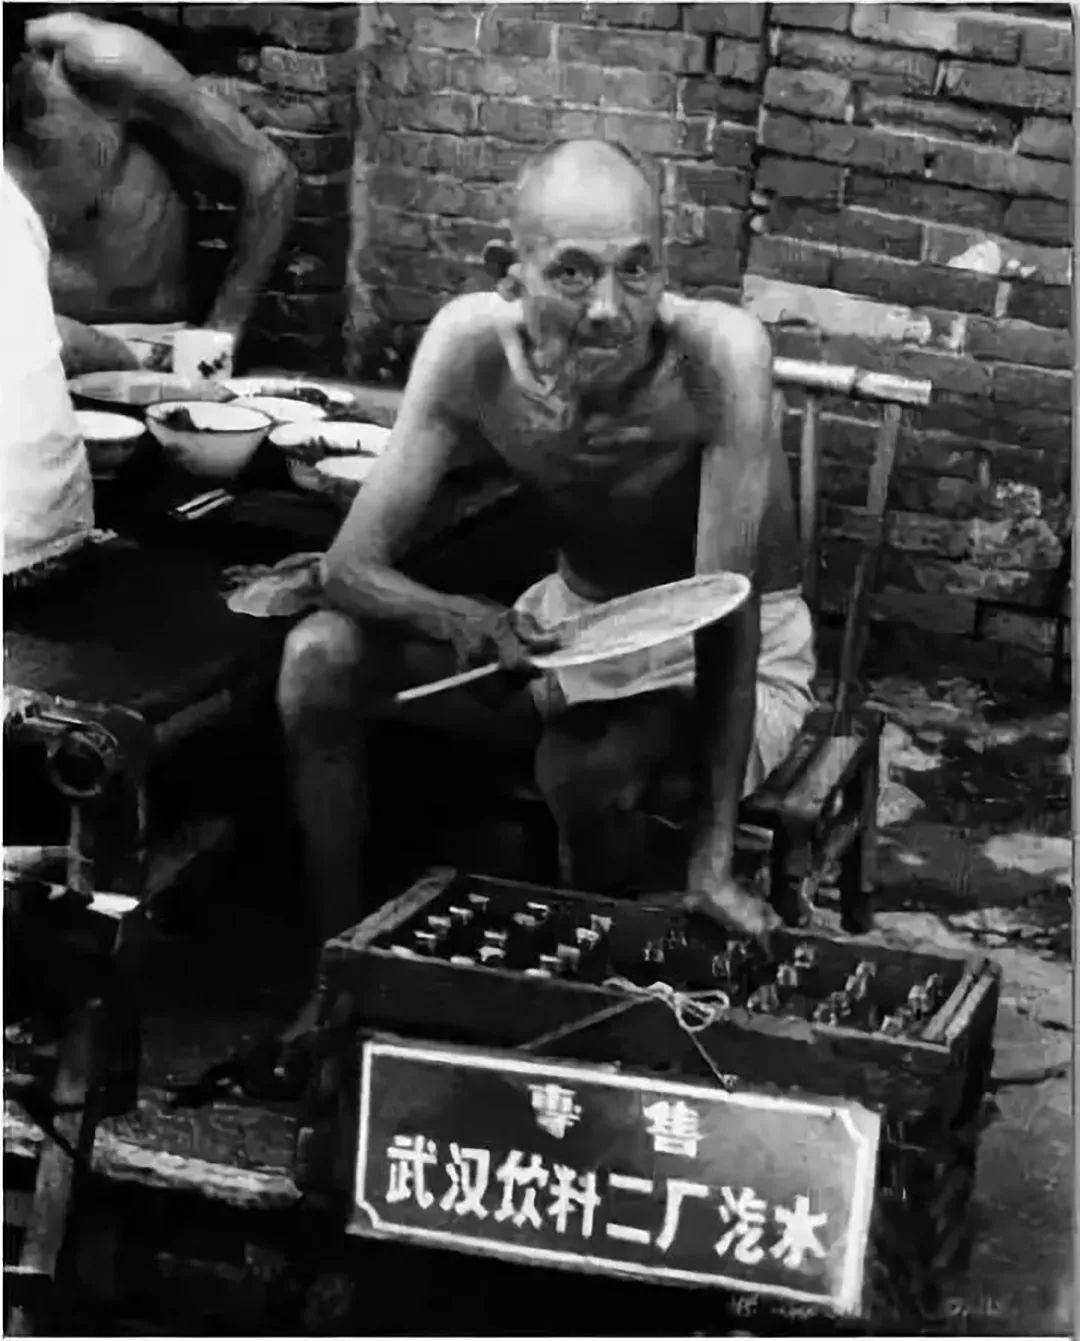 武汉二厂汽水在街头售卖的老照片 ©图源网络